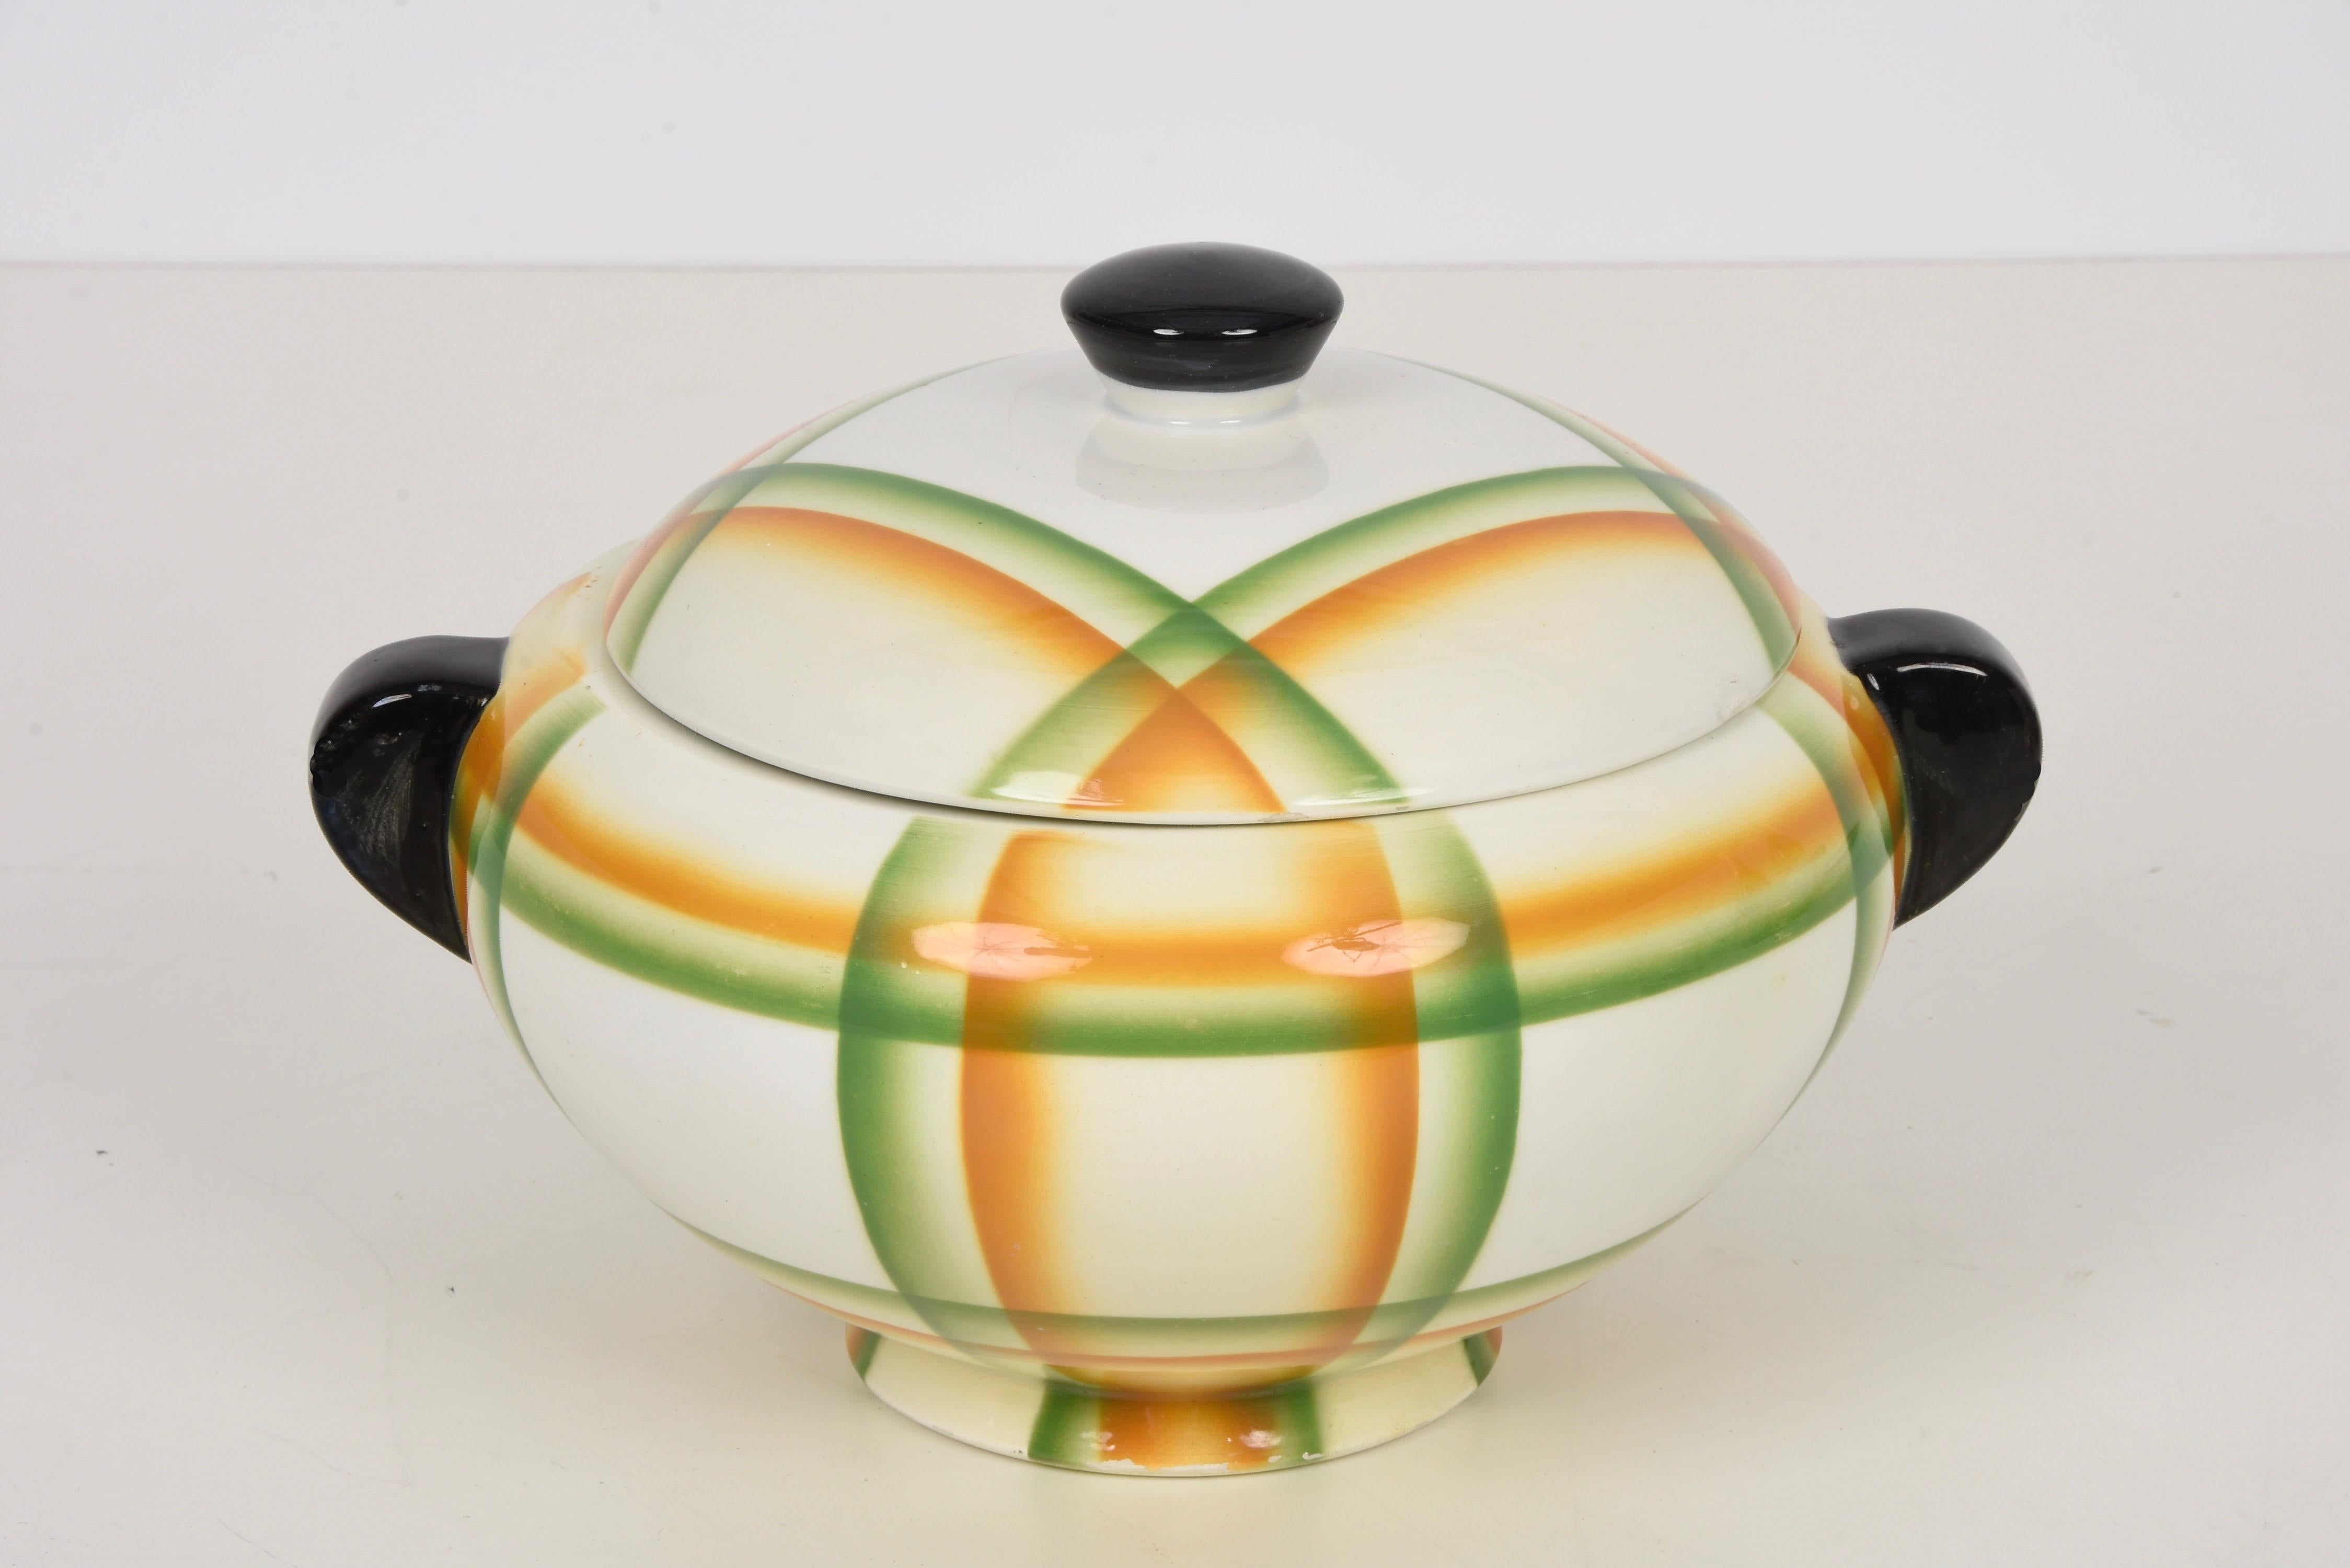 Wunderschöne, futuristische Simonetto Suppenschüssel aus Keramik mit Airbrush-Muster. Dieses fantastische Stück wurde in den 1930er Jahren in Italien von der Cooperativa Ceramica Imola hergestellt und von Angelo Simonetto entworfen.

Es ist ein